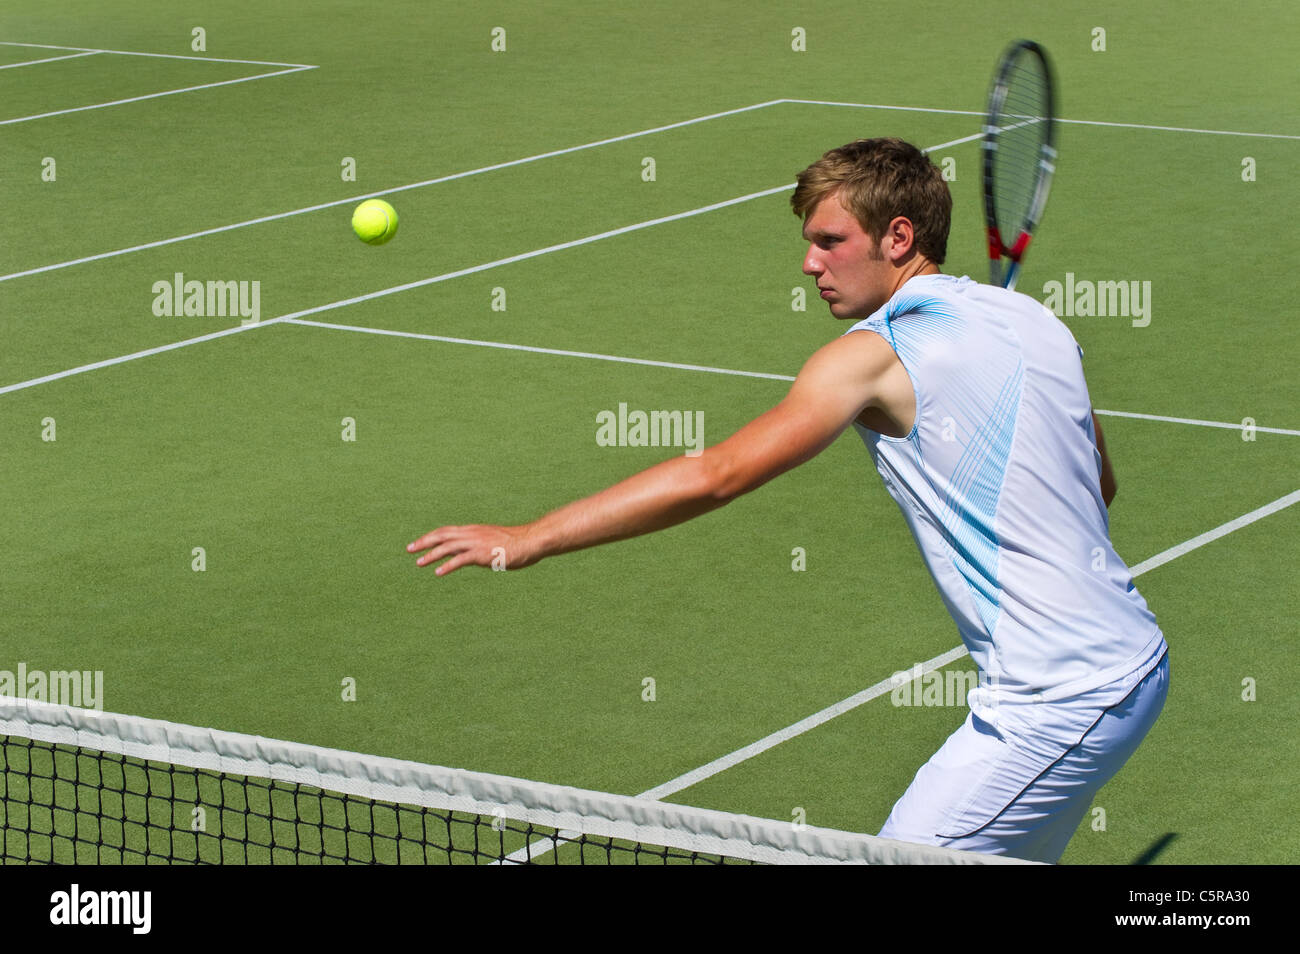 Un jugador de tenis centrado sobre la bola. Foto de stock